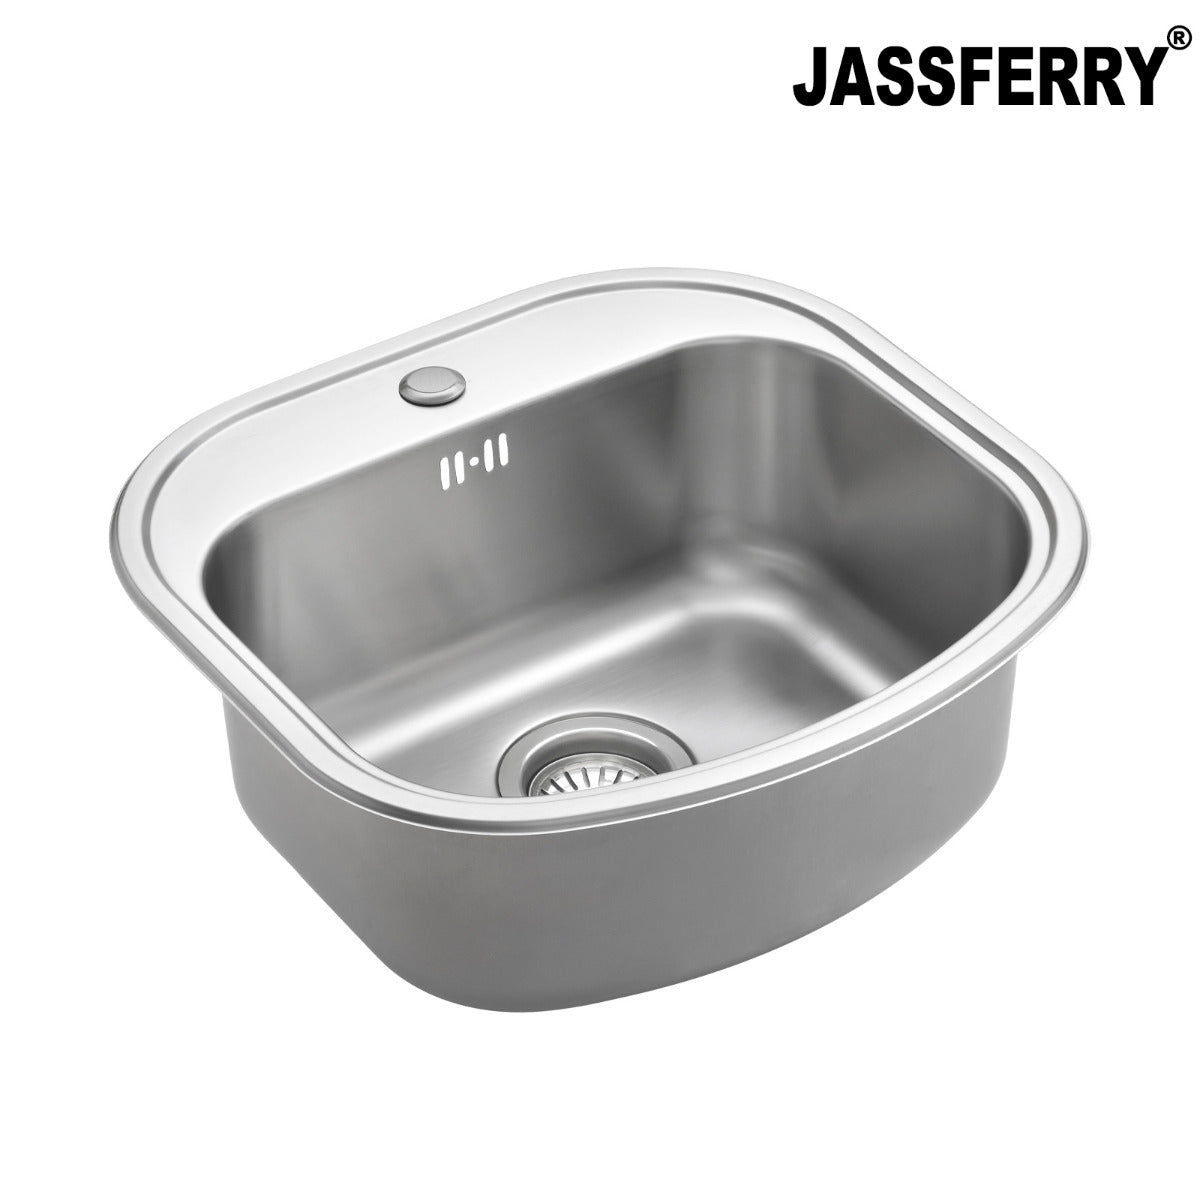 JassferryJASSFERRY Stainless Steel Single Bowl Kitchen Sink with Pre-drilled Tap HoleKitchen Sink